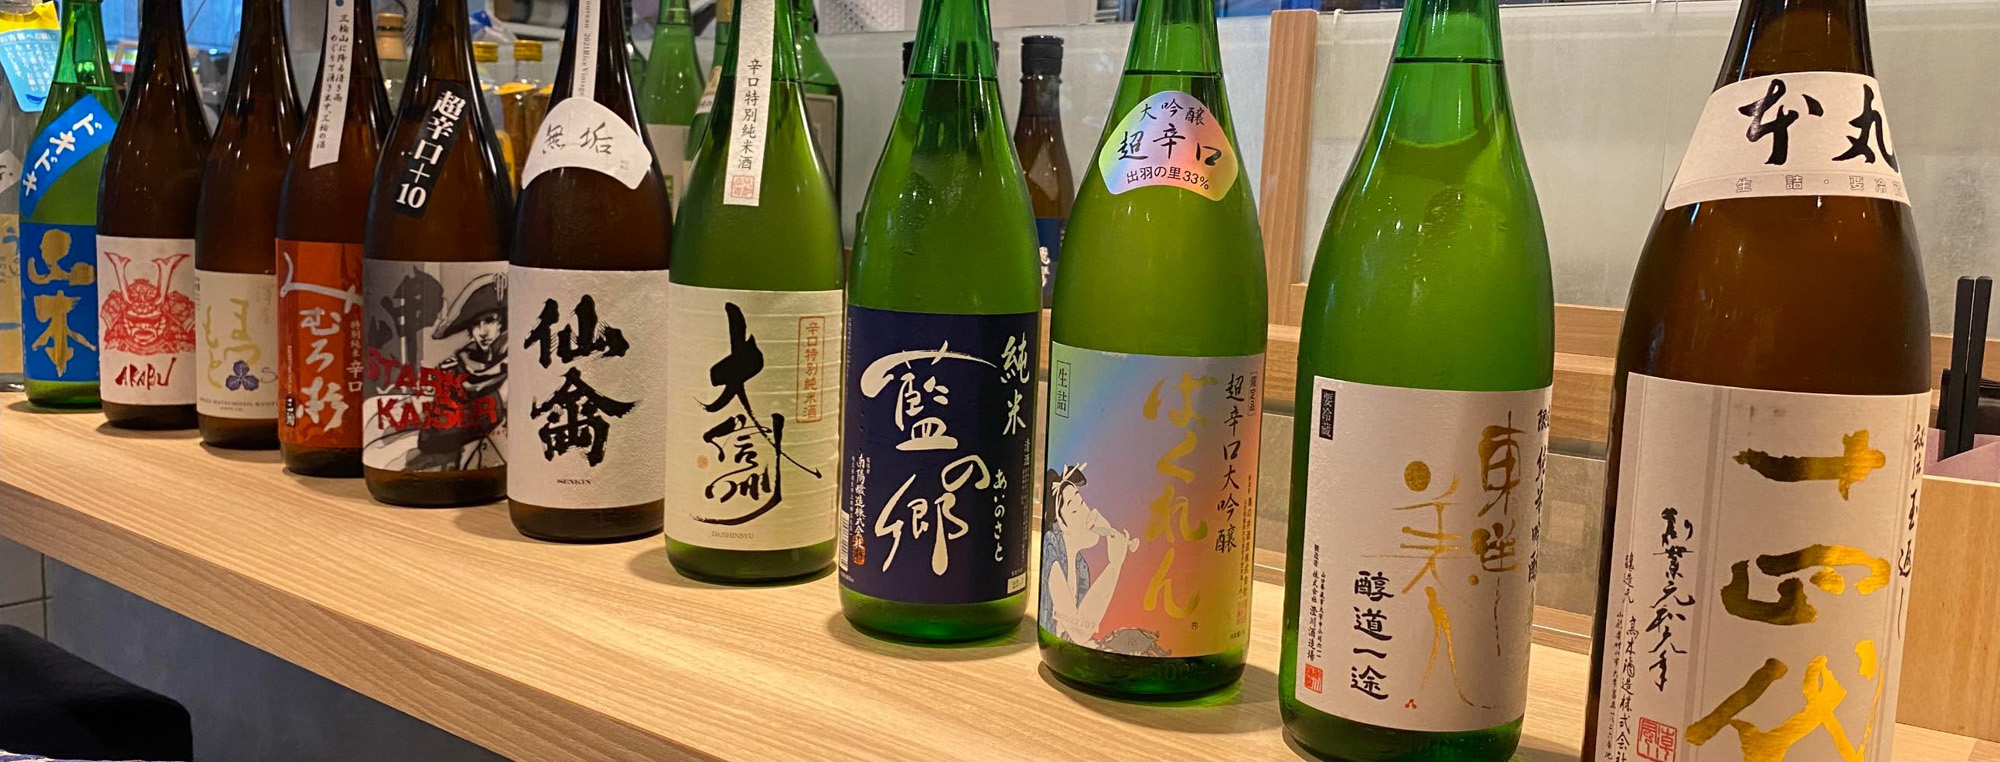 幻、しぼりたての各種日本酒